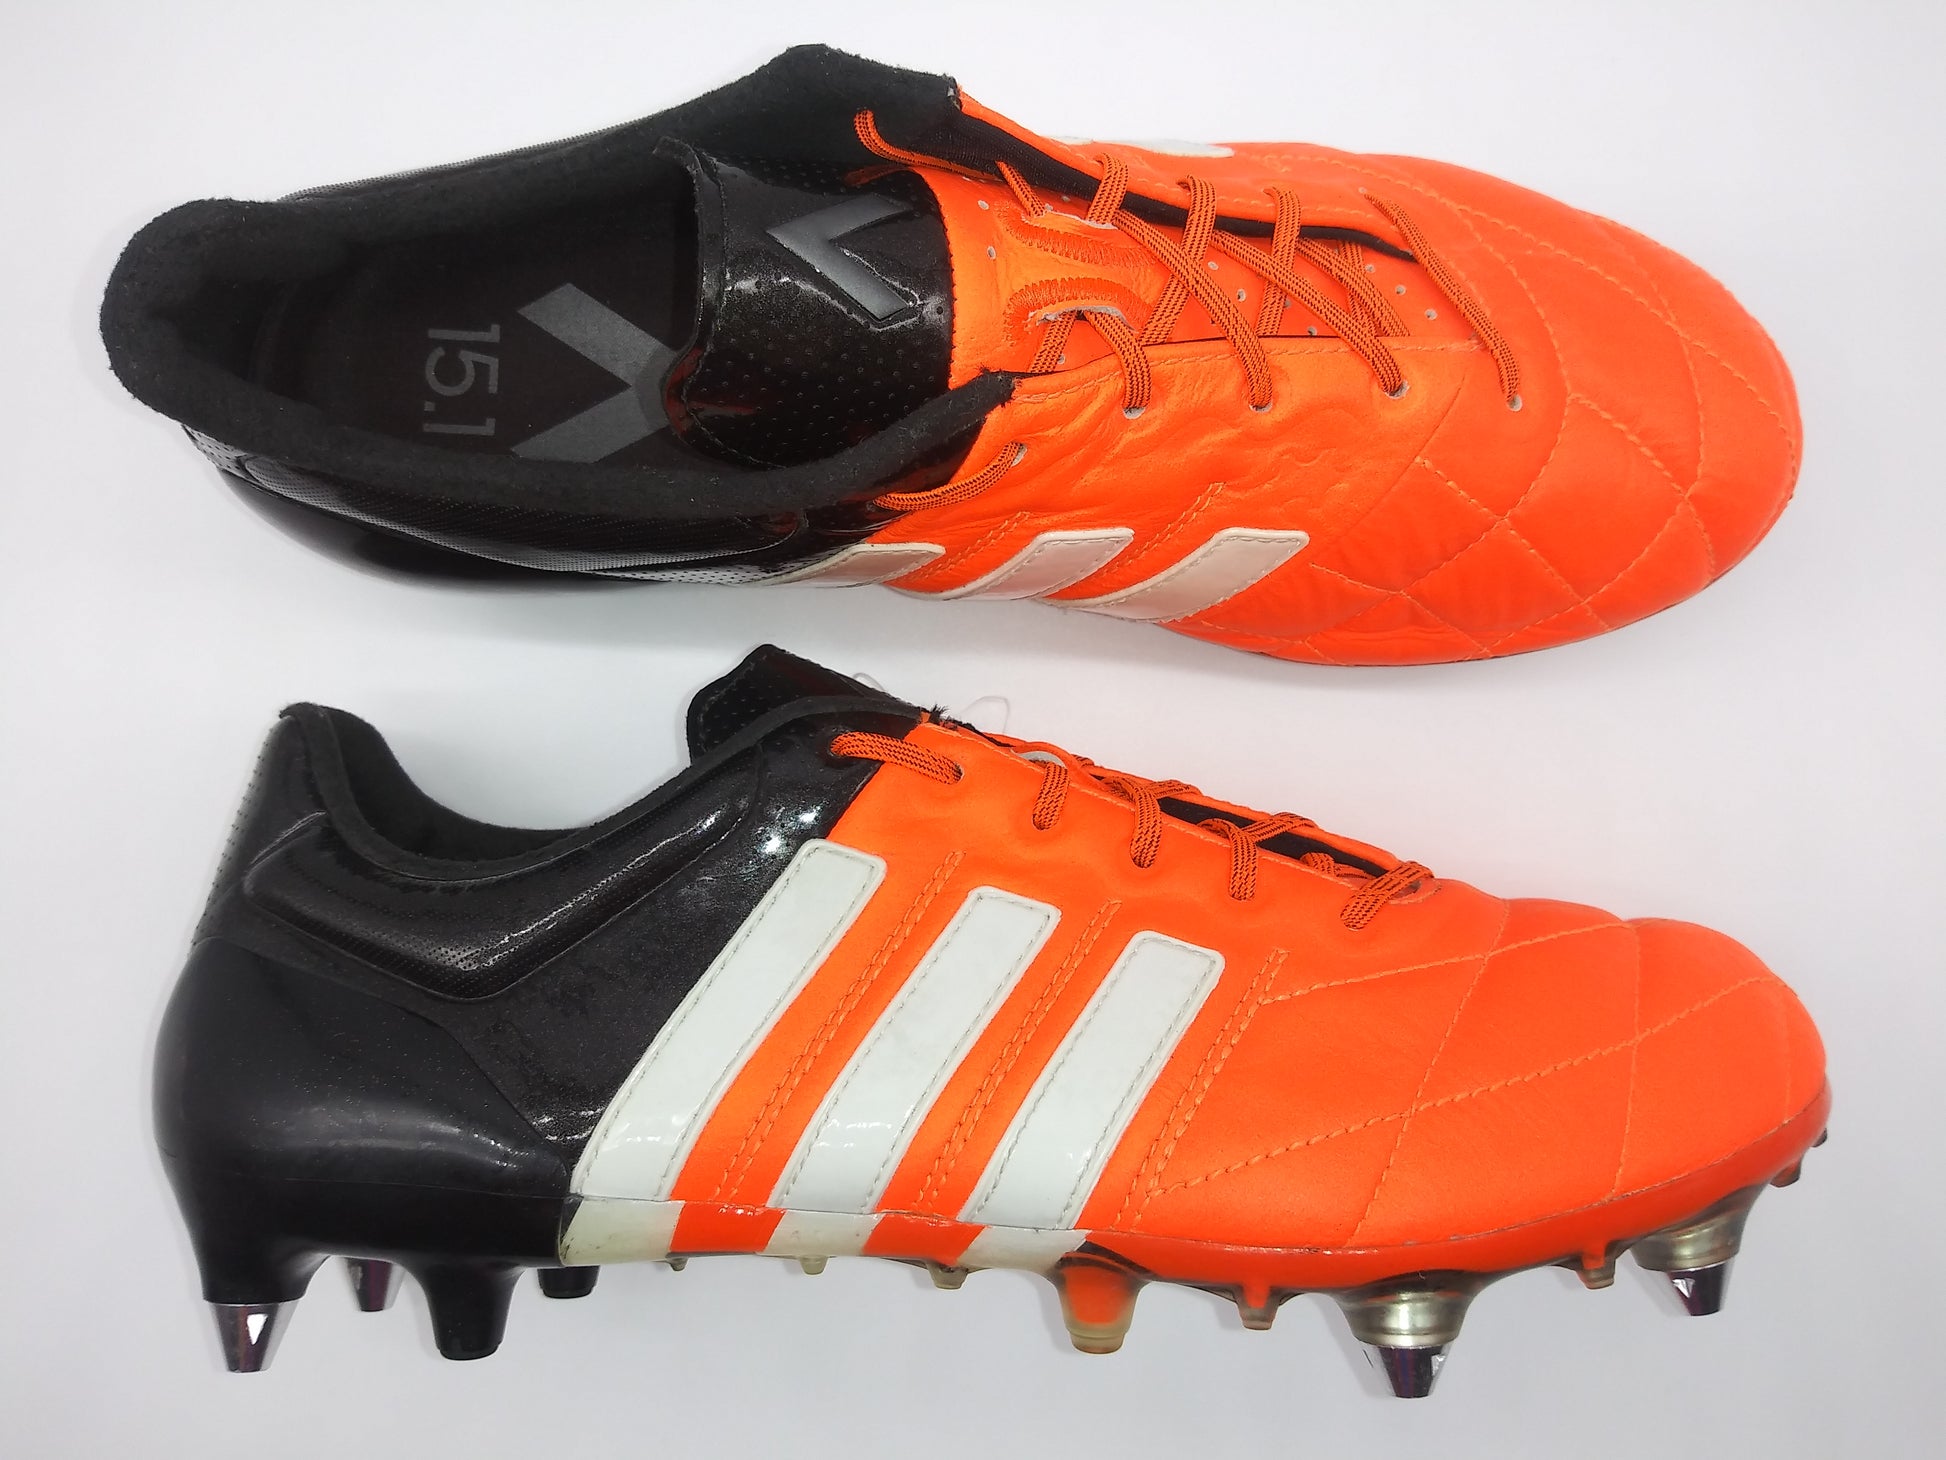 voltereta Previamente Impulso Adidas ACE 15.1 SG Black Orange – Villegas Footwear